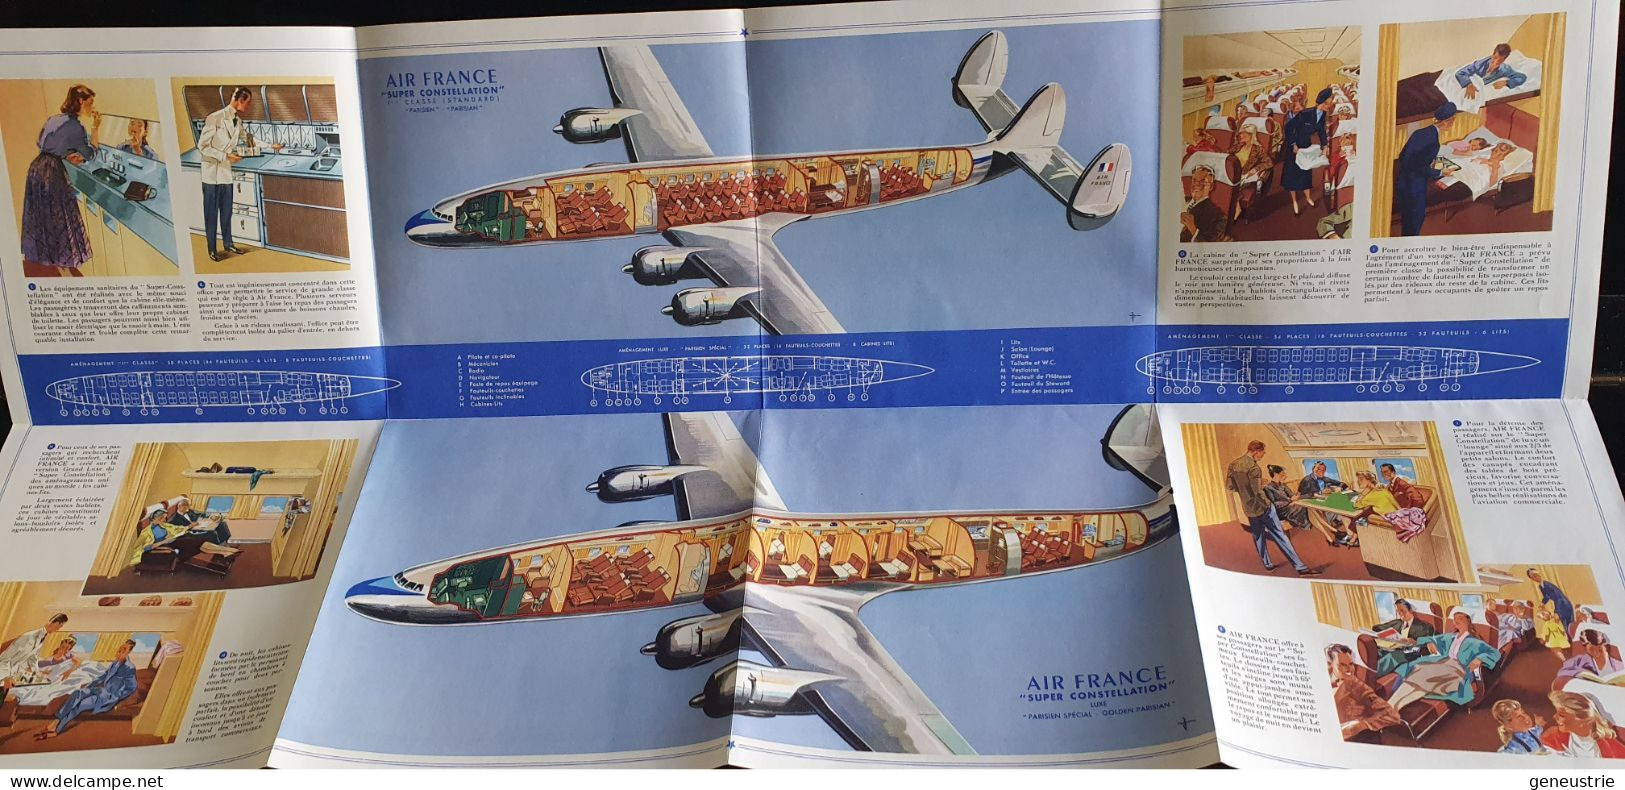 Très belle publicité années 50 "Air France - Avion Super Constellation - Lockeed"